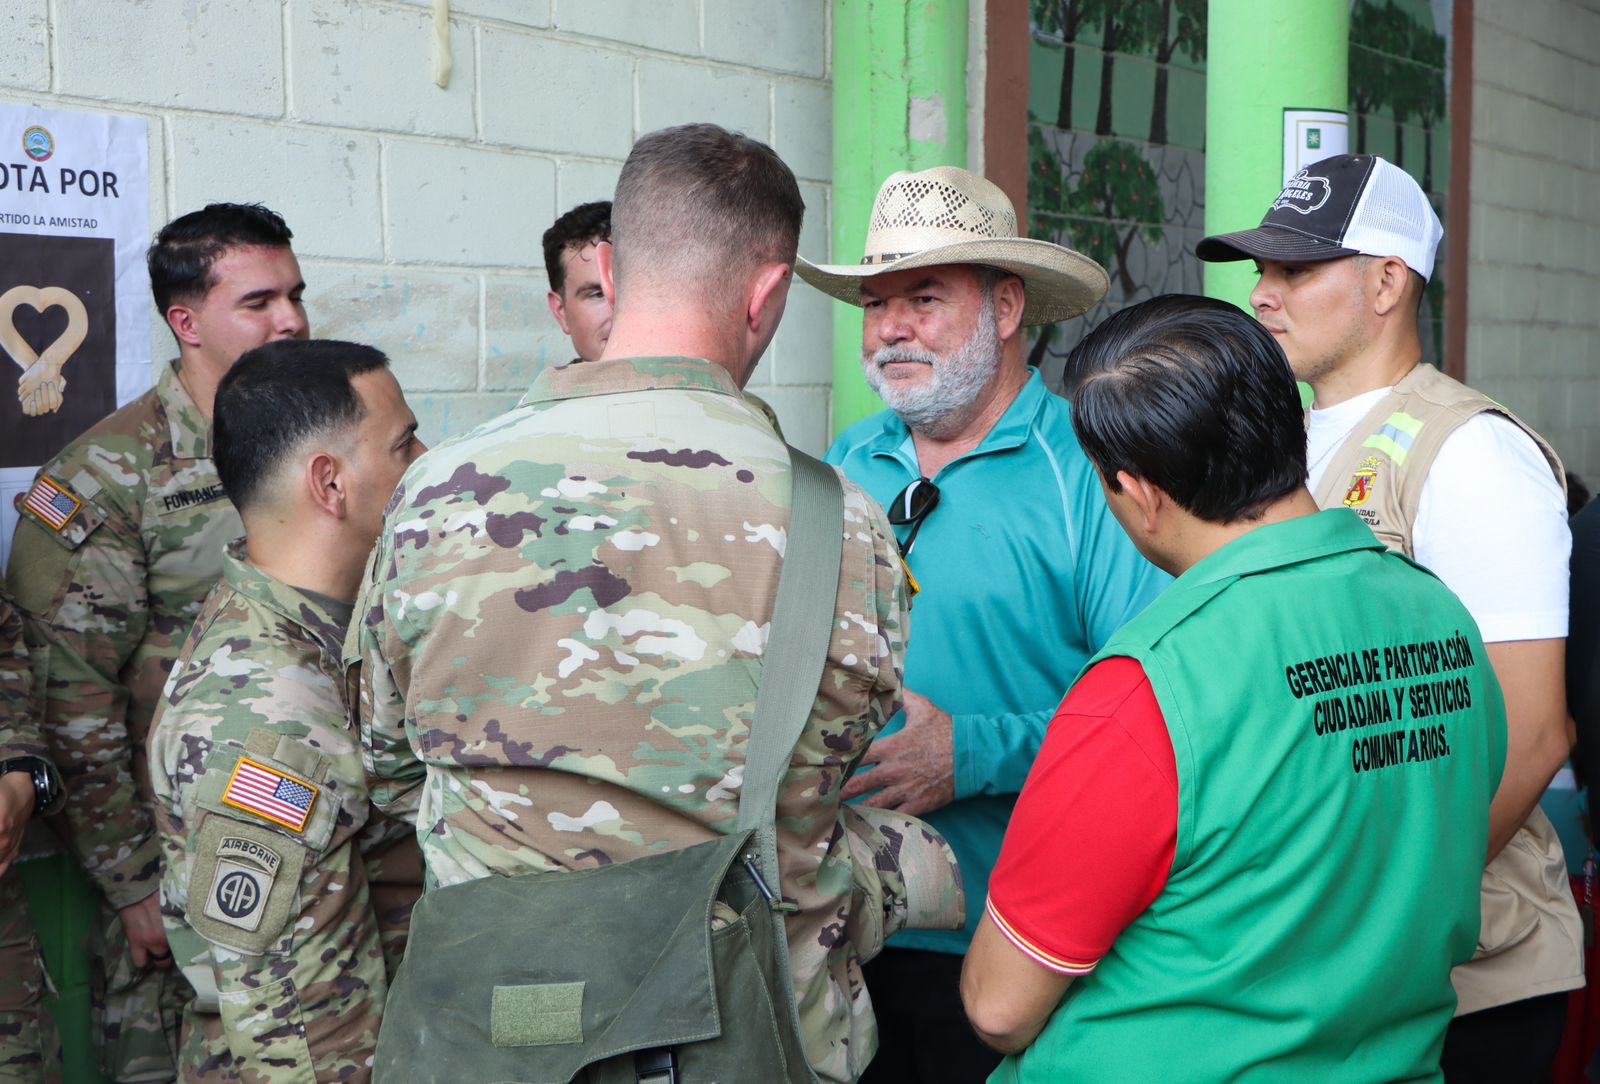 105 Brigada de Infantería benefician a miles de pobladores de El Zapotal con brigada médica